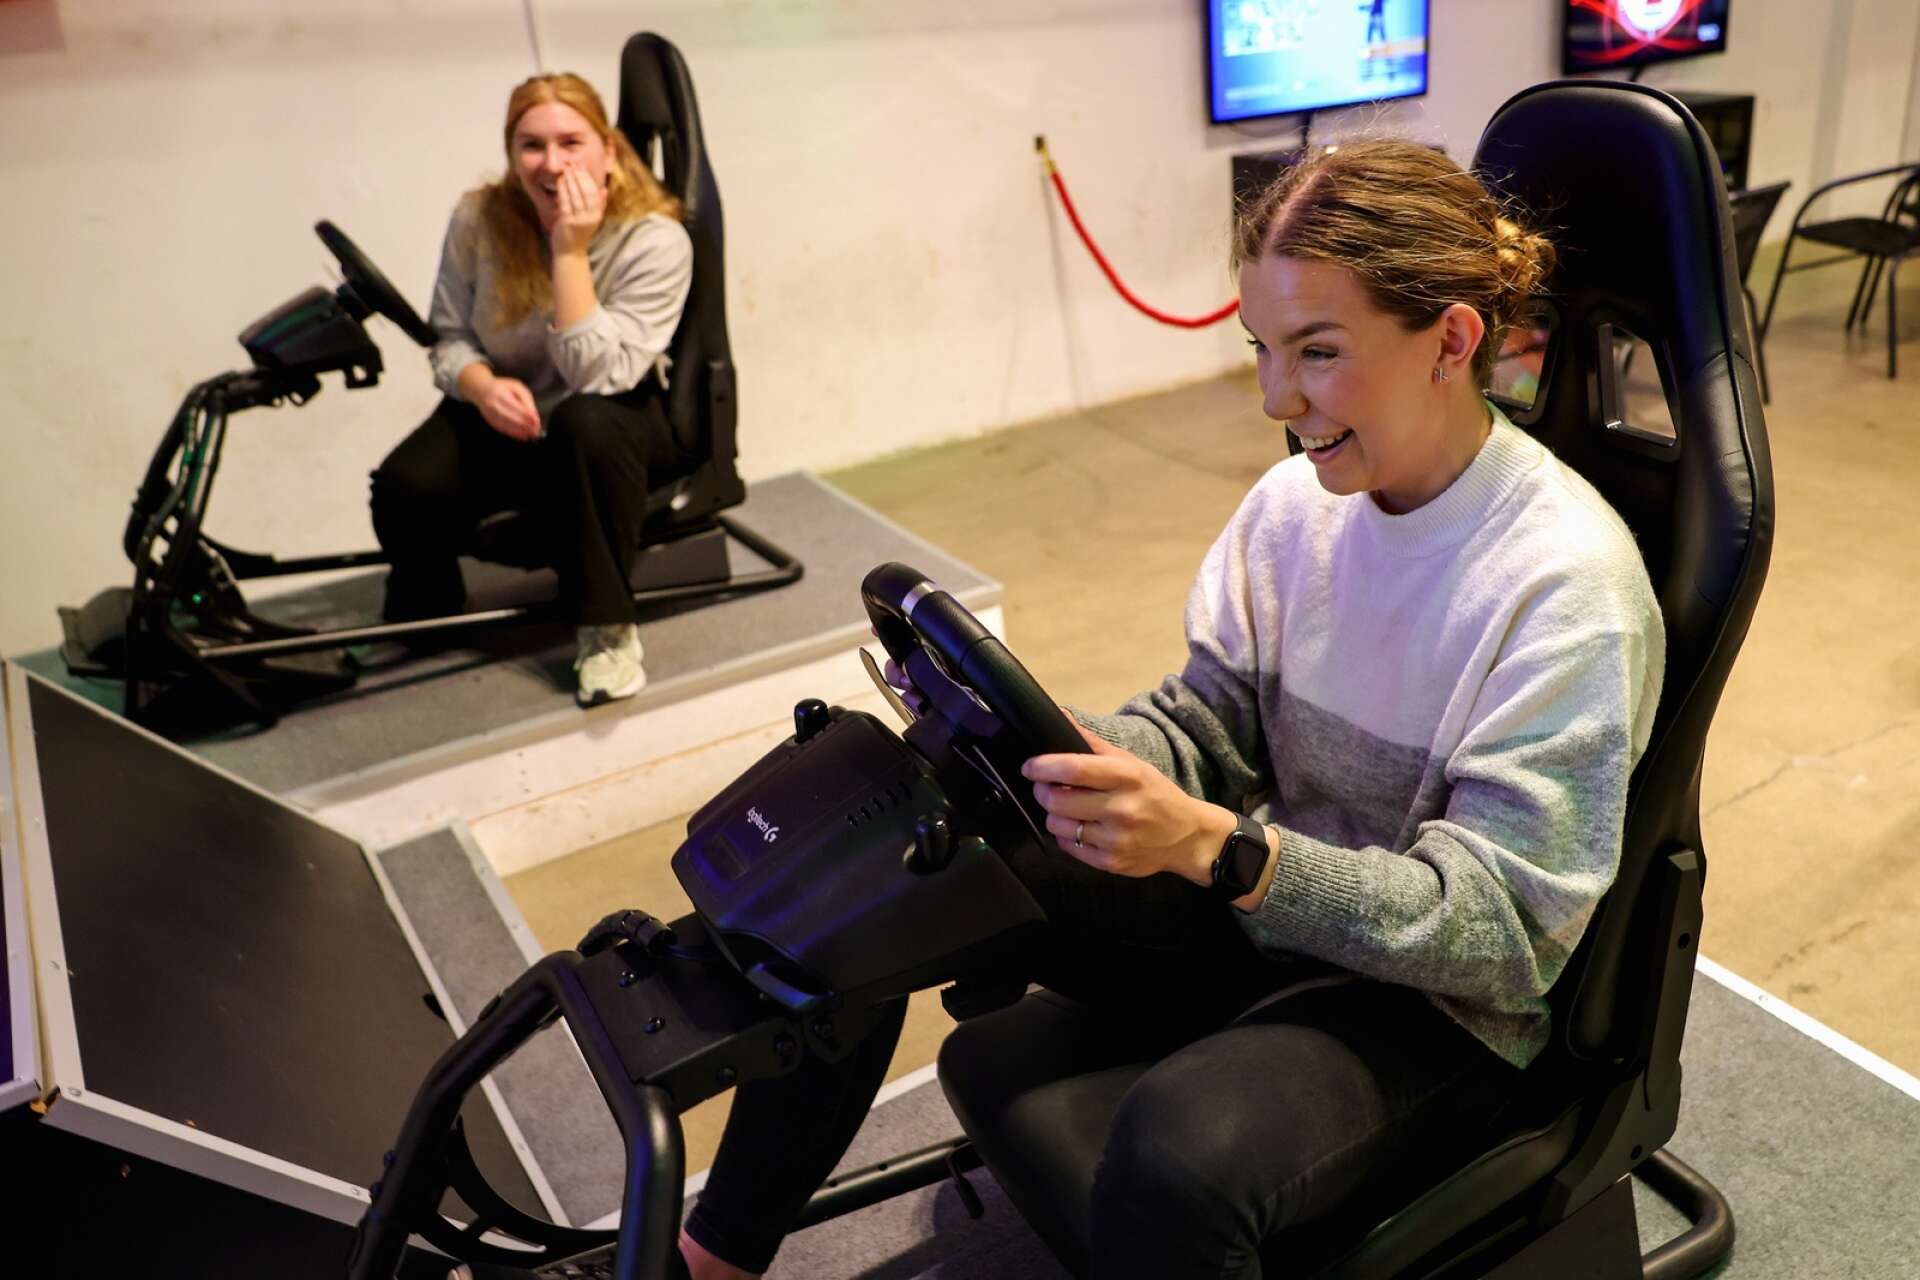 NLT:s reportrar Louise och Clara testade att spela i racingsimulatorn vid Lidköpings E-sportcenter. Det gick sådär...